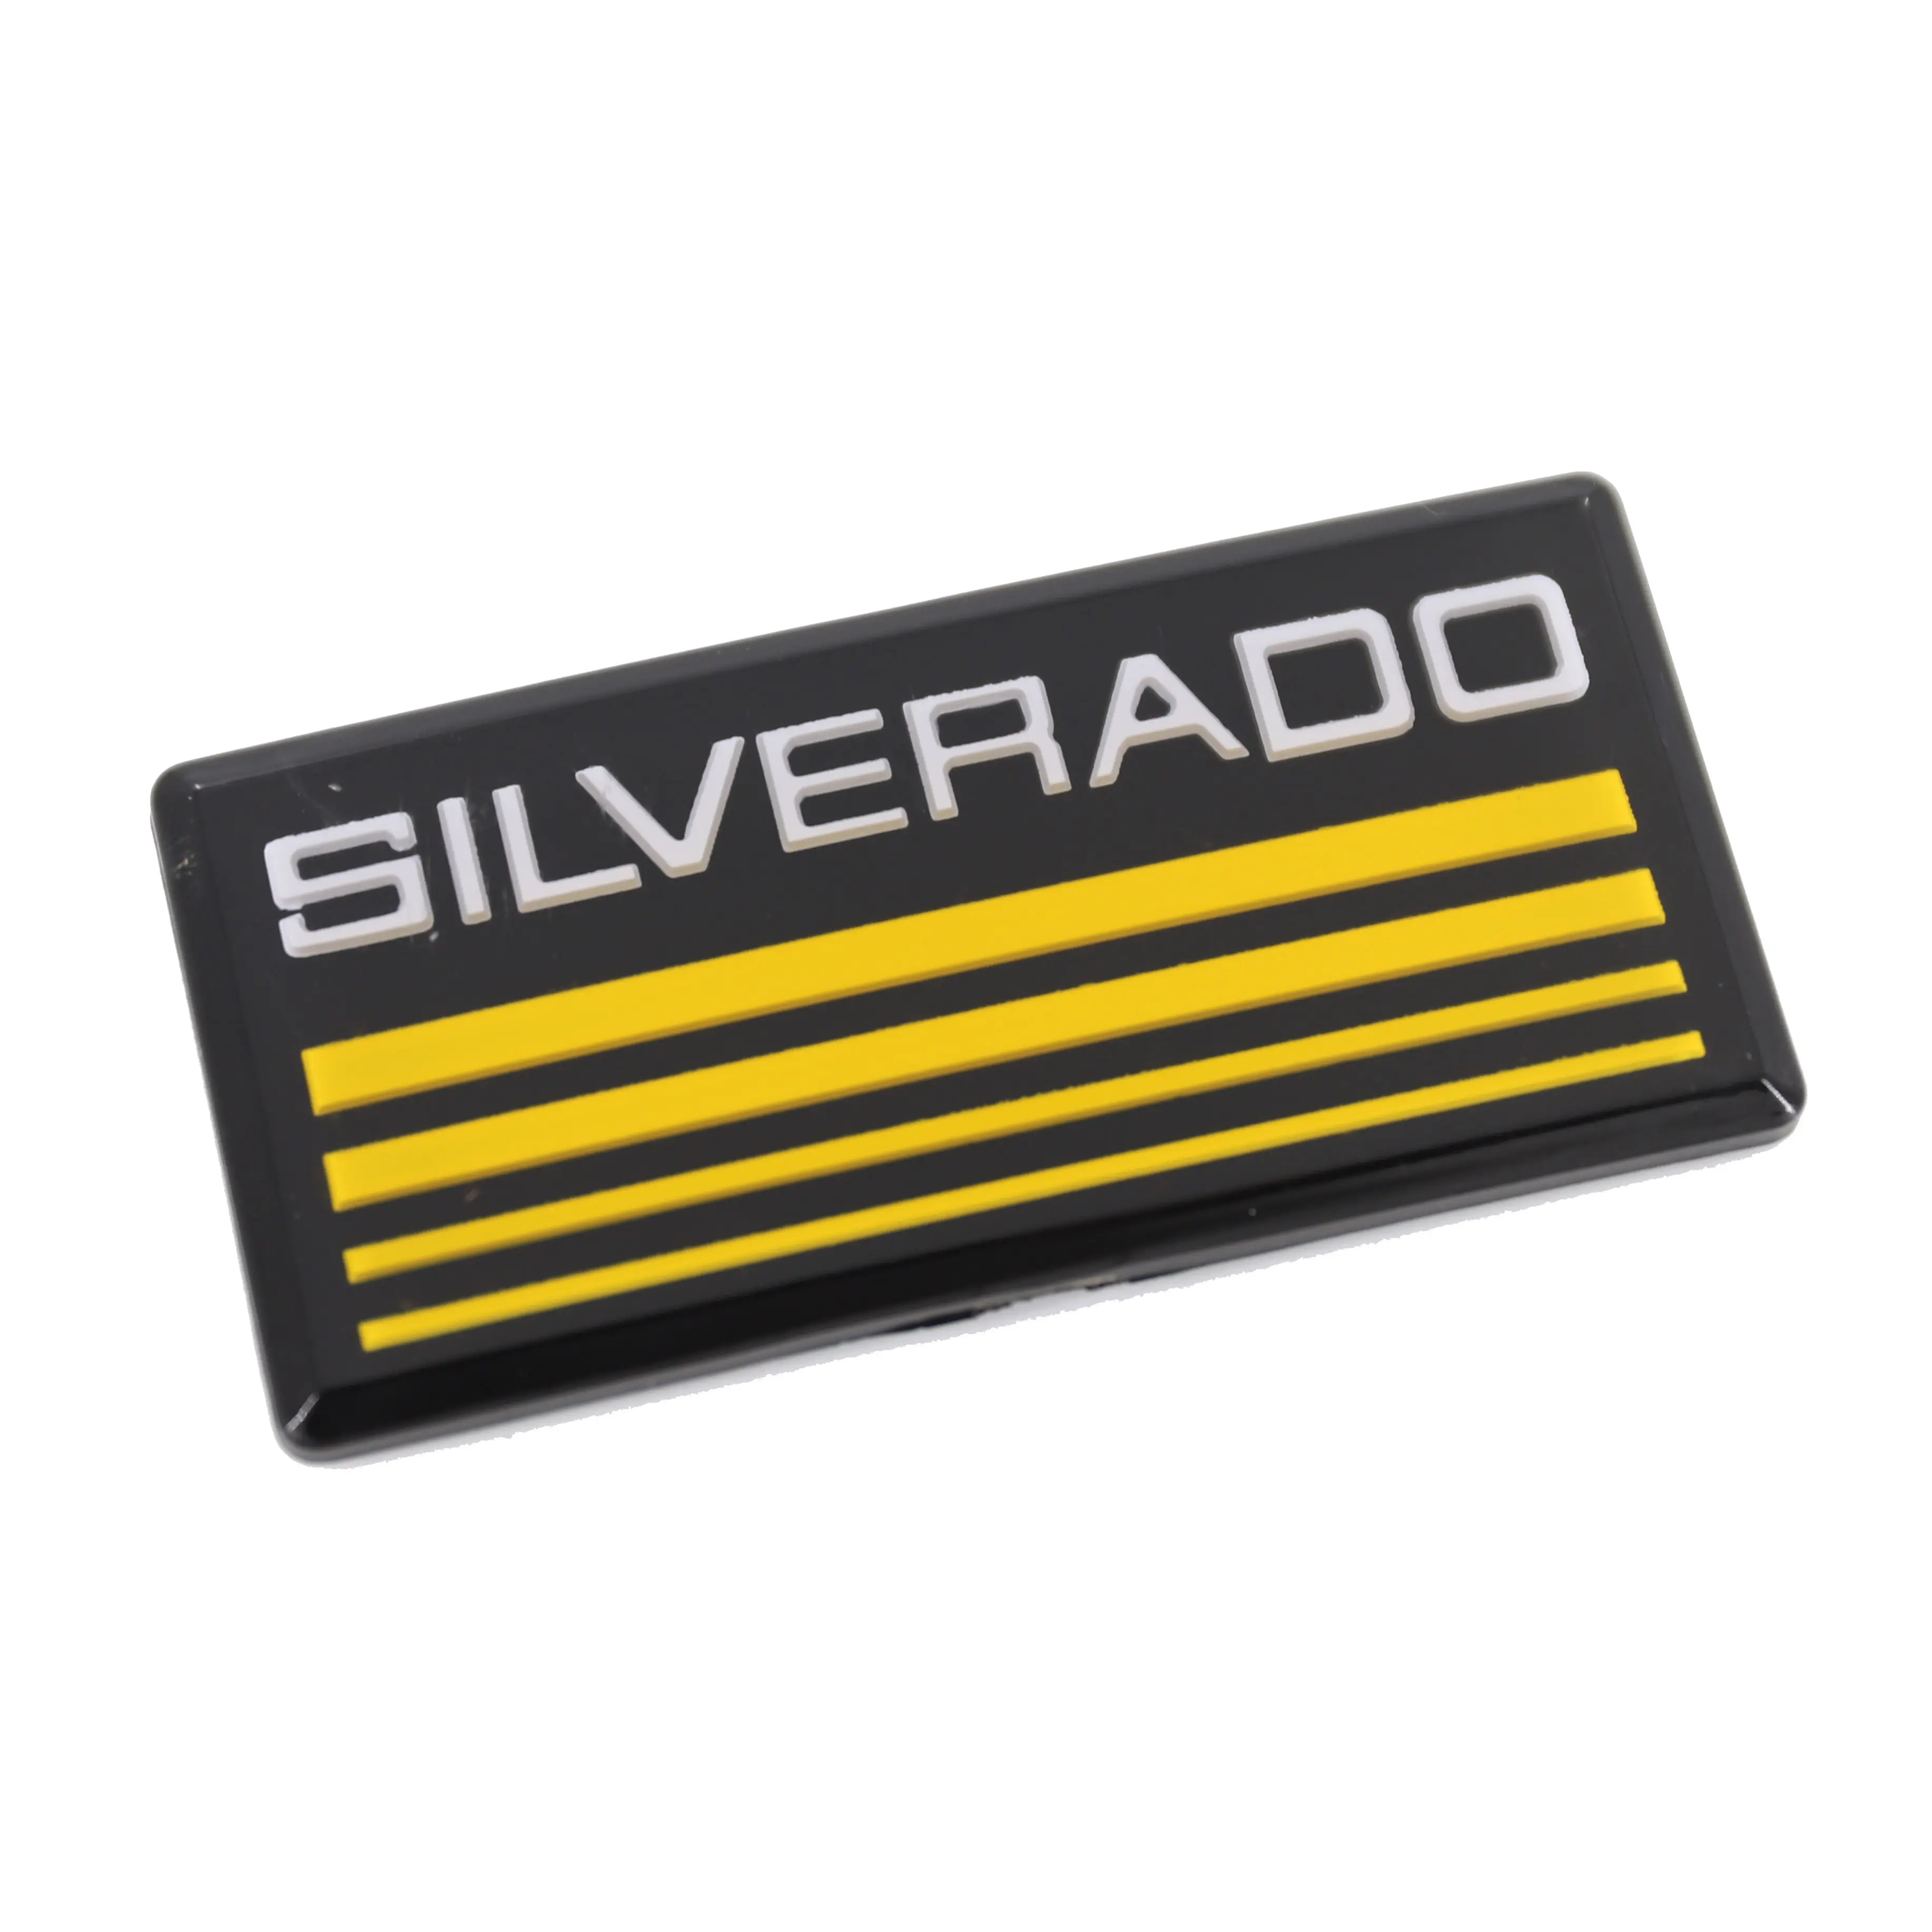 Lettre en plastique ABS personnalisée, emblème de carrosserie de voiture adapté à Silverado